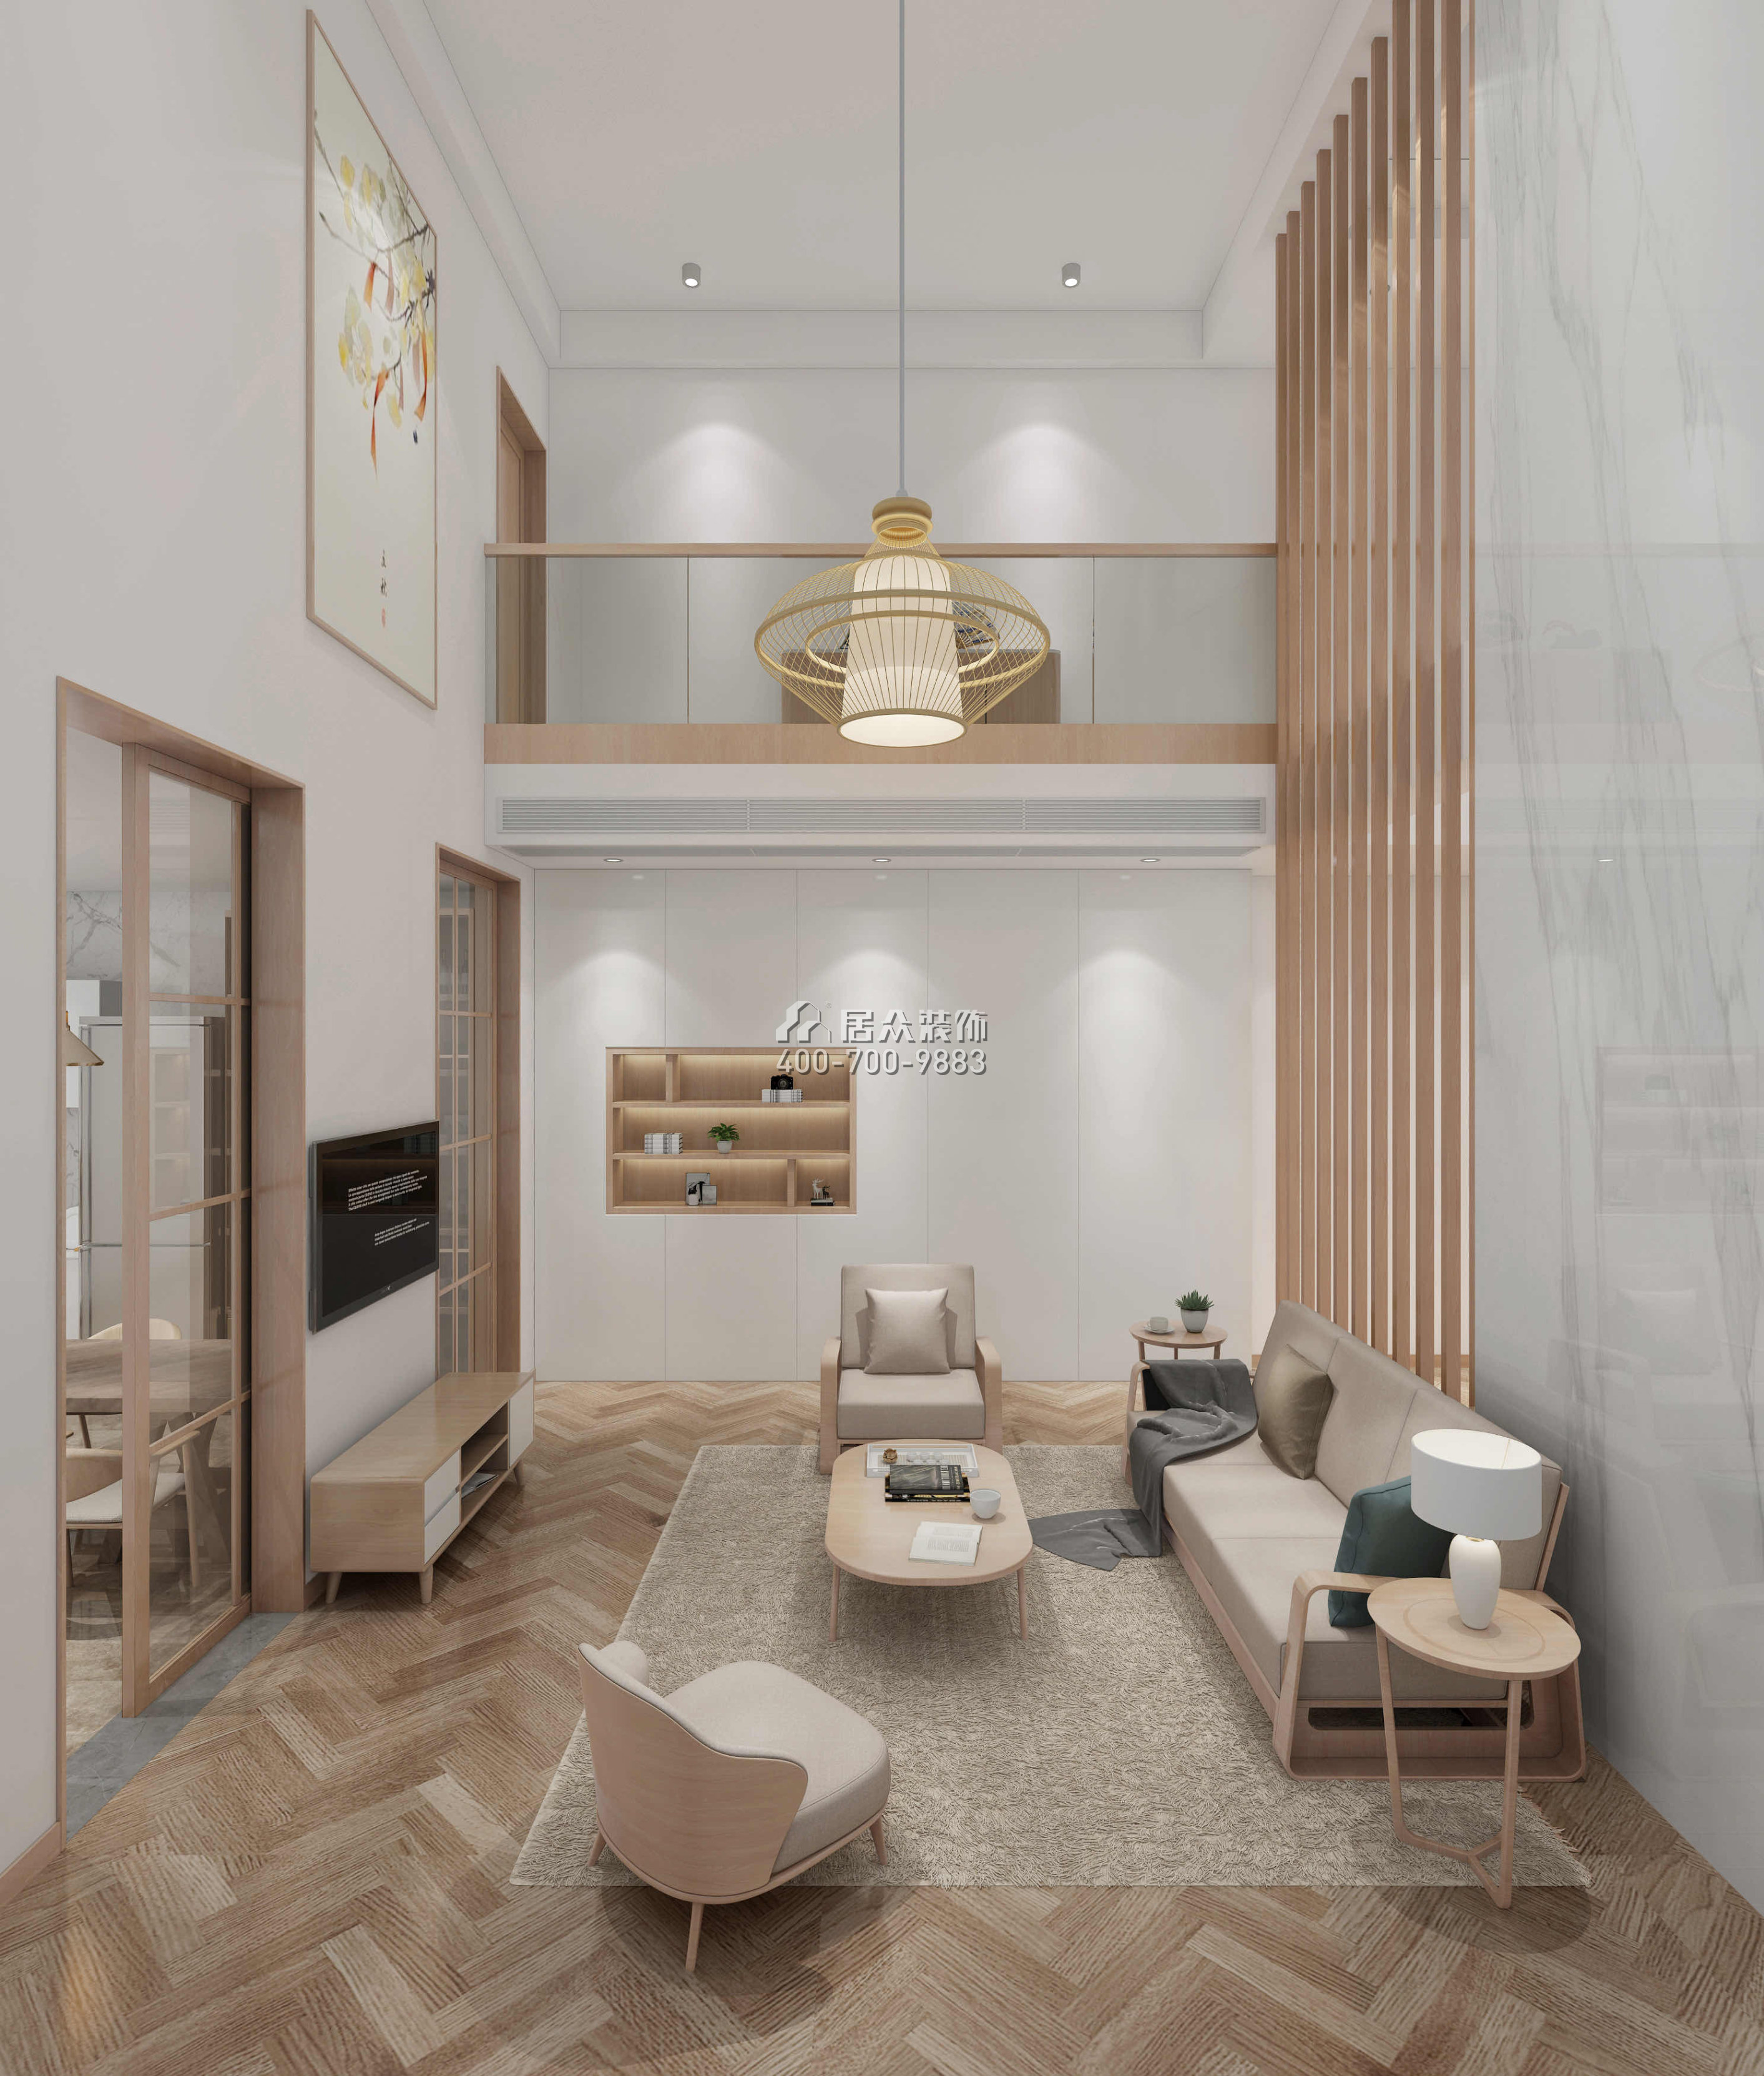 中信紅樹山330平方米現代簡約風格別墅戶型客廳裝修效果圖